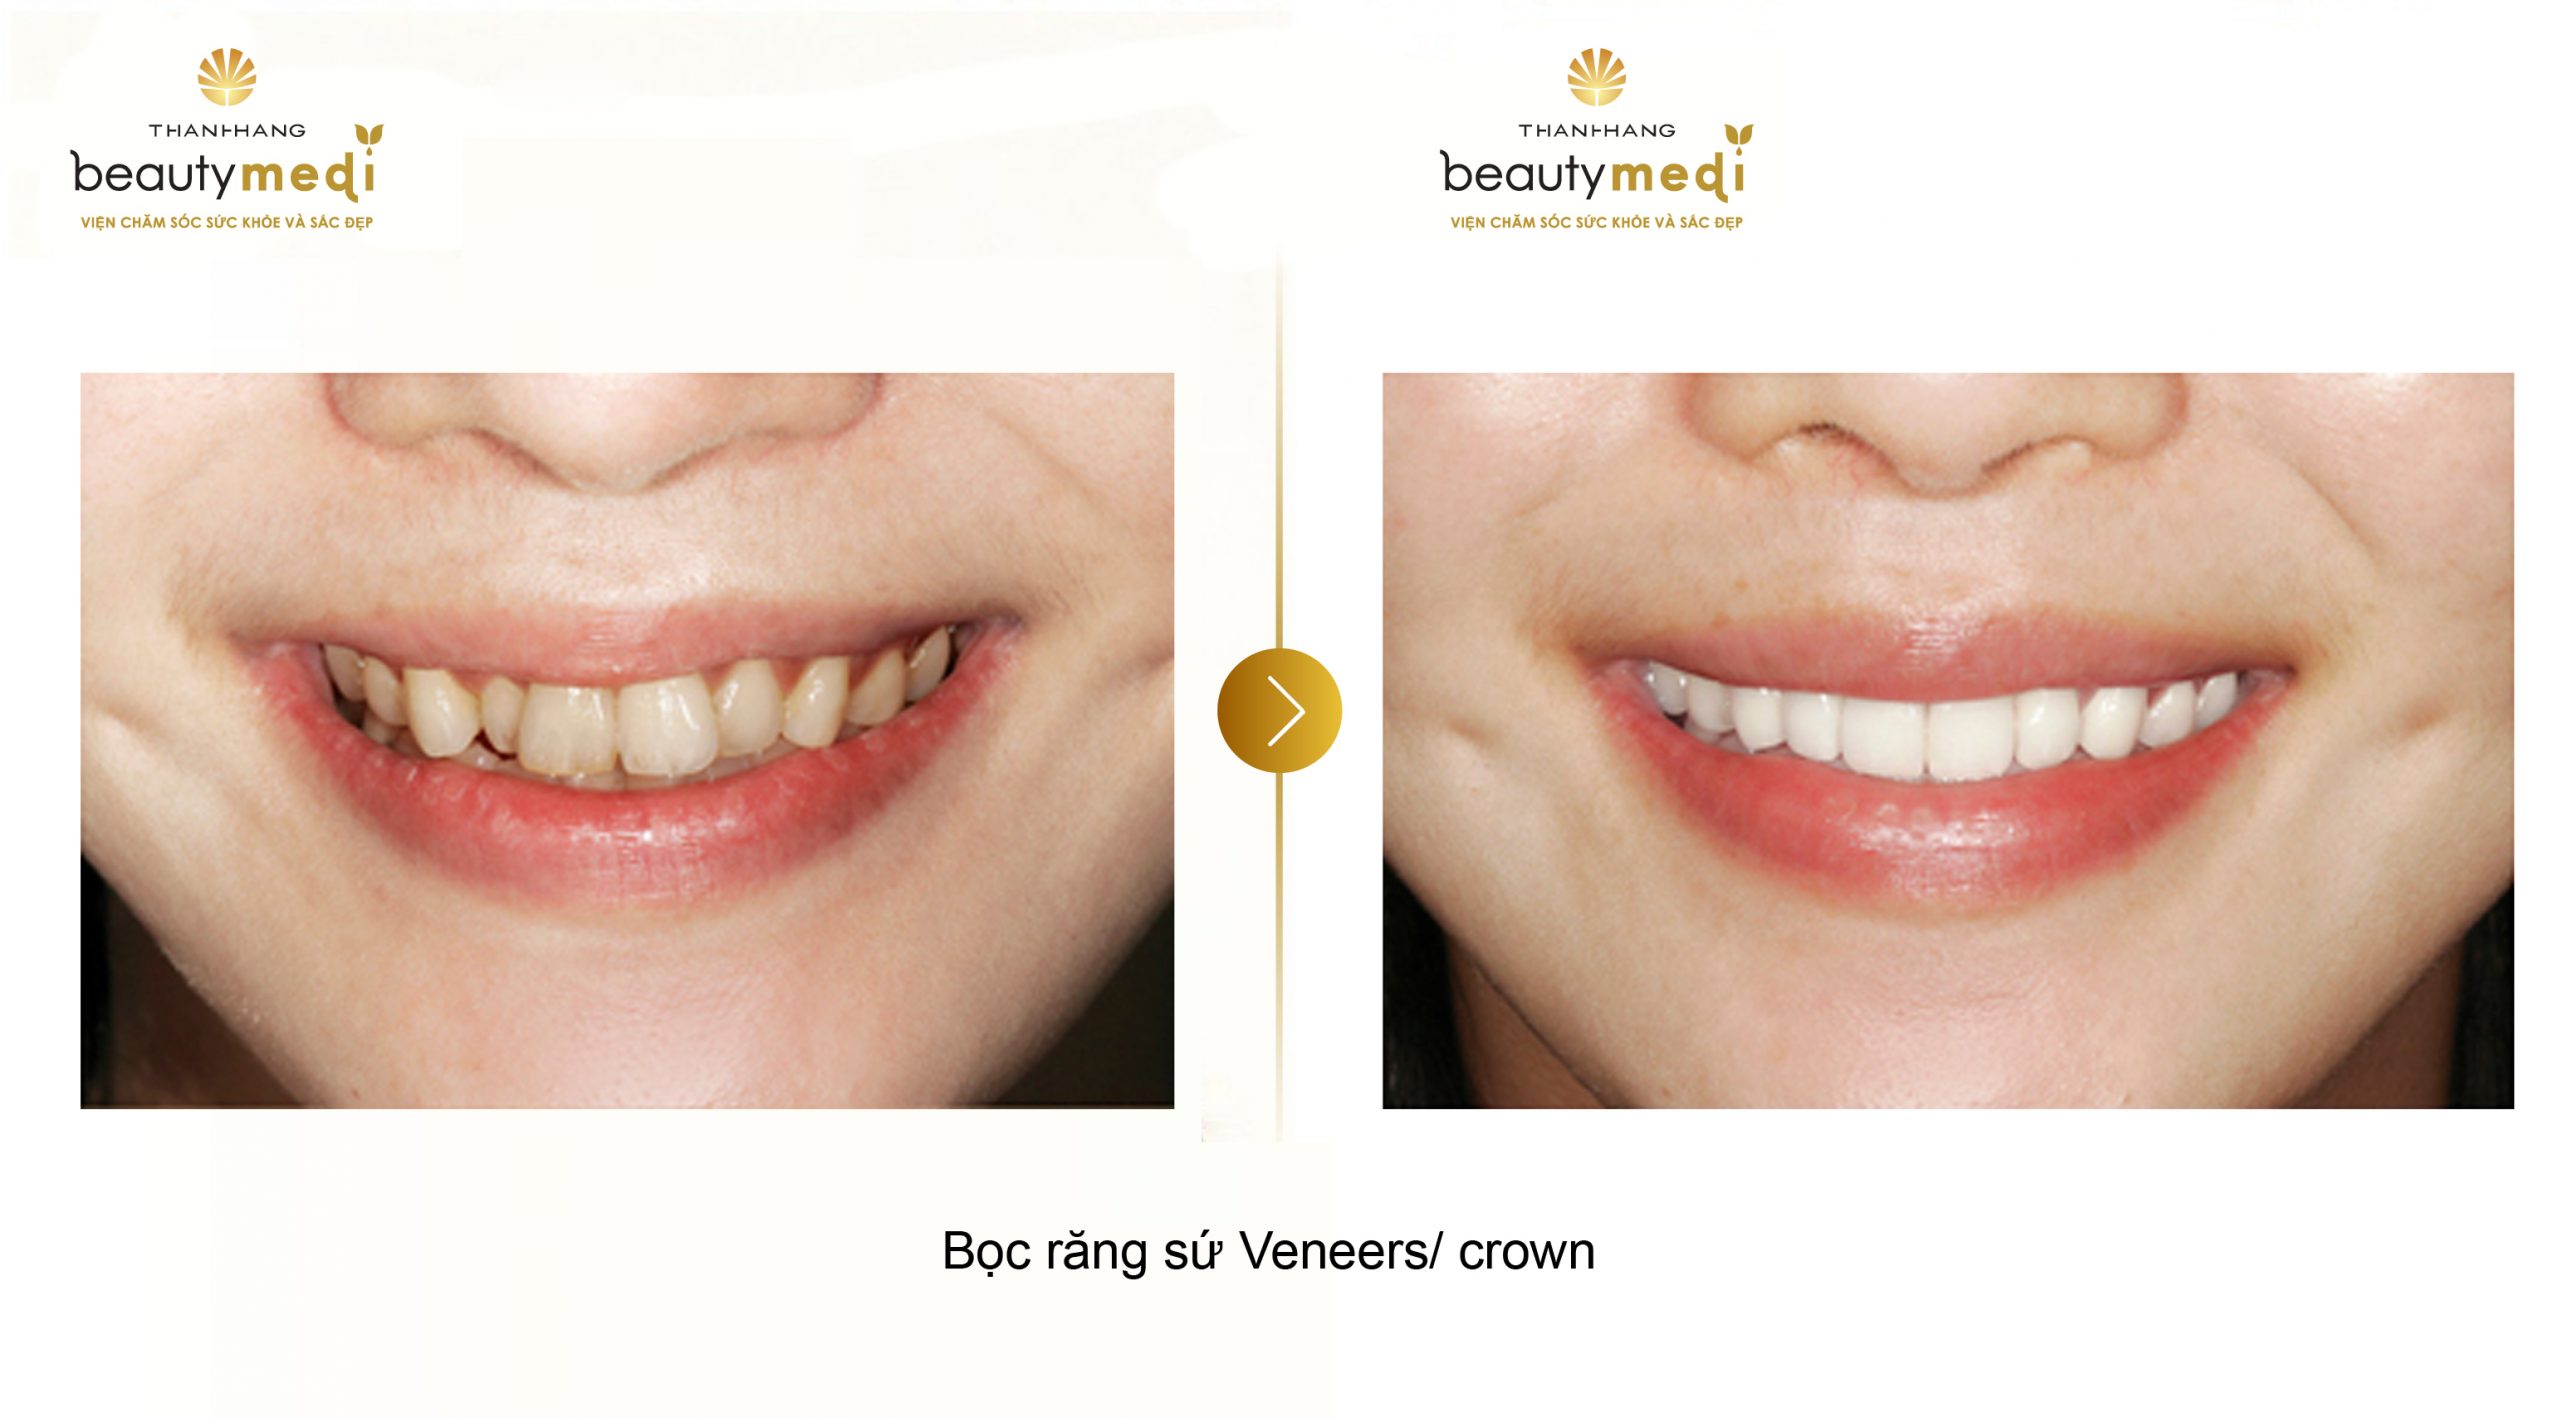 Răng trắng sáng và đều sau khi được bọc răng sứ Veneer/ Crowns